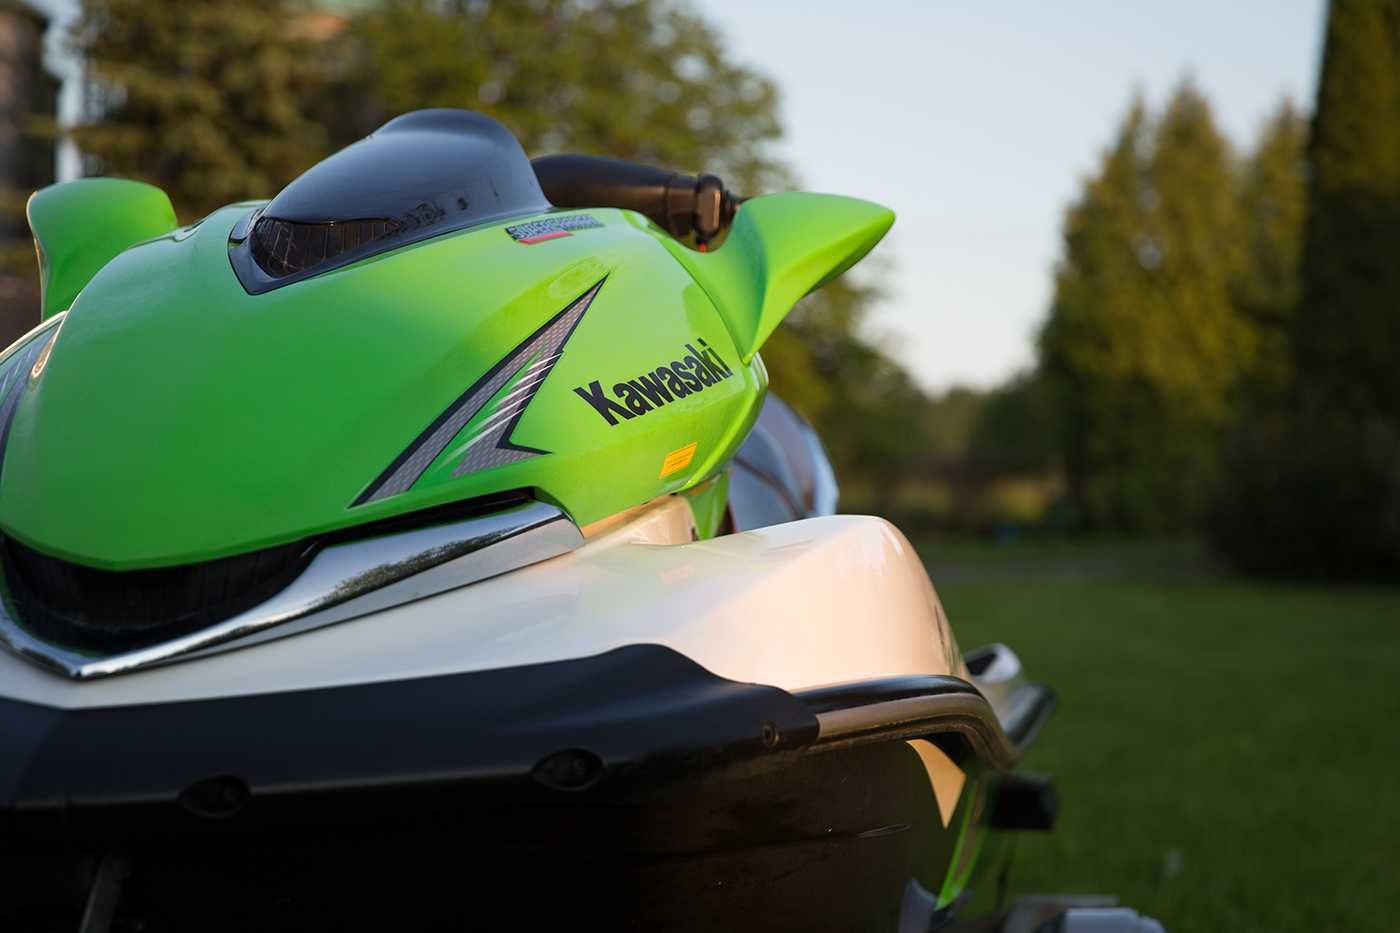 Skuter Wodny Kawasaki Ultra 250 X Okazja Idealny zarejestr + przyczepa